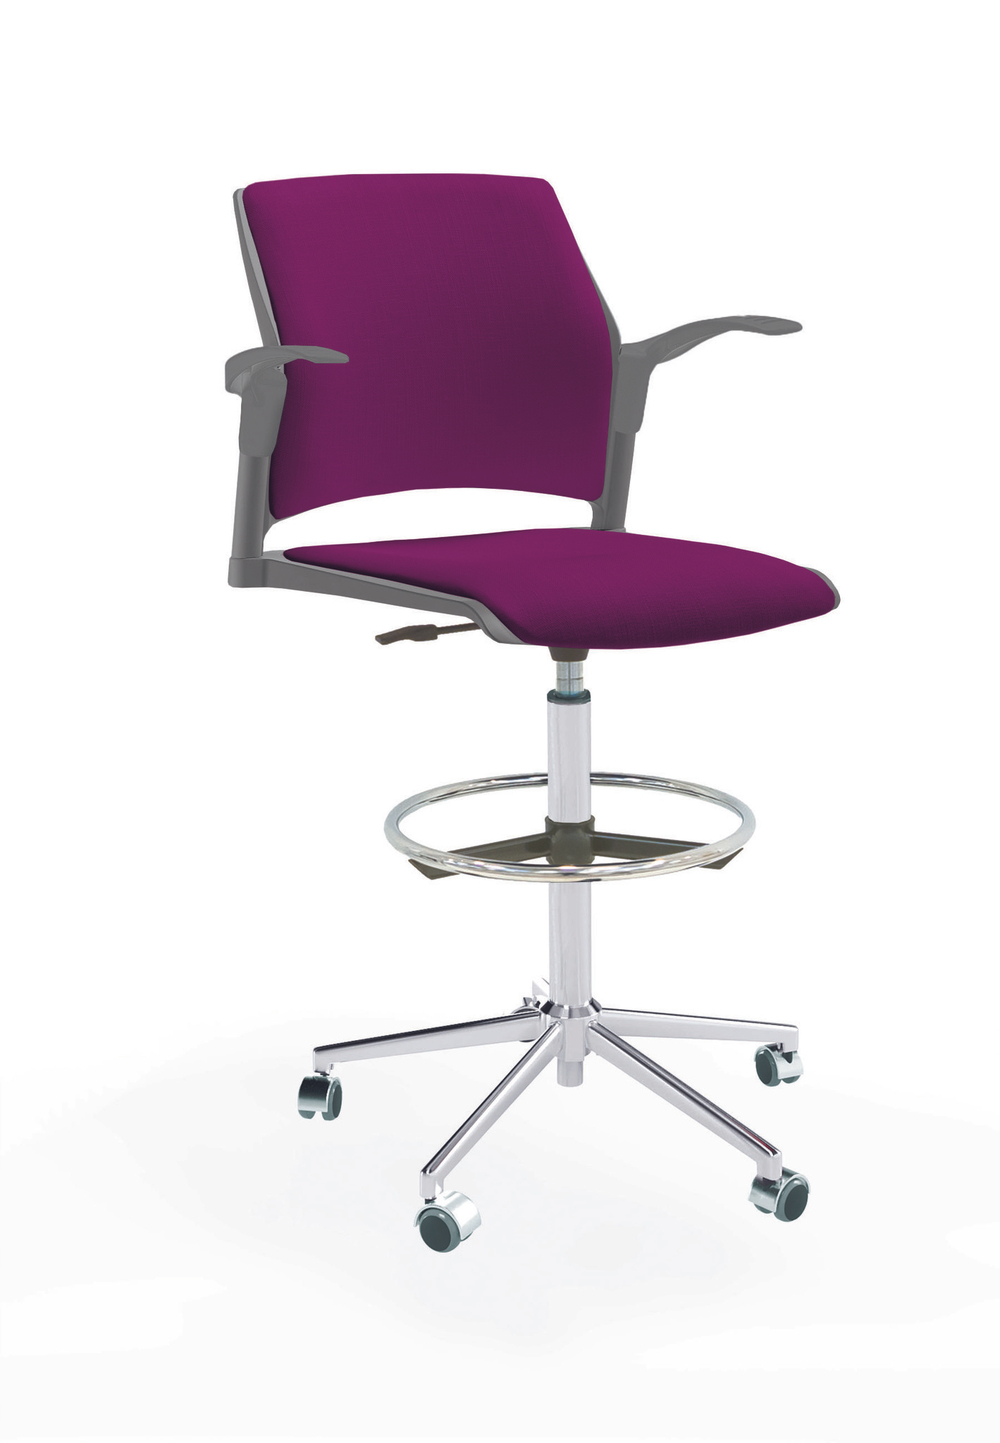 Кресло Rewind каркас хром, пластик серый, база стальная хромированная, с открытыми подлокотниками, сиденье и спинка фиолетовые